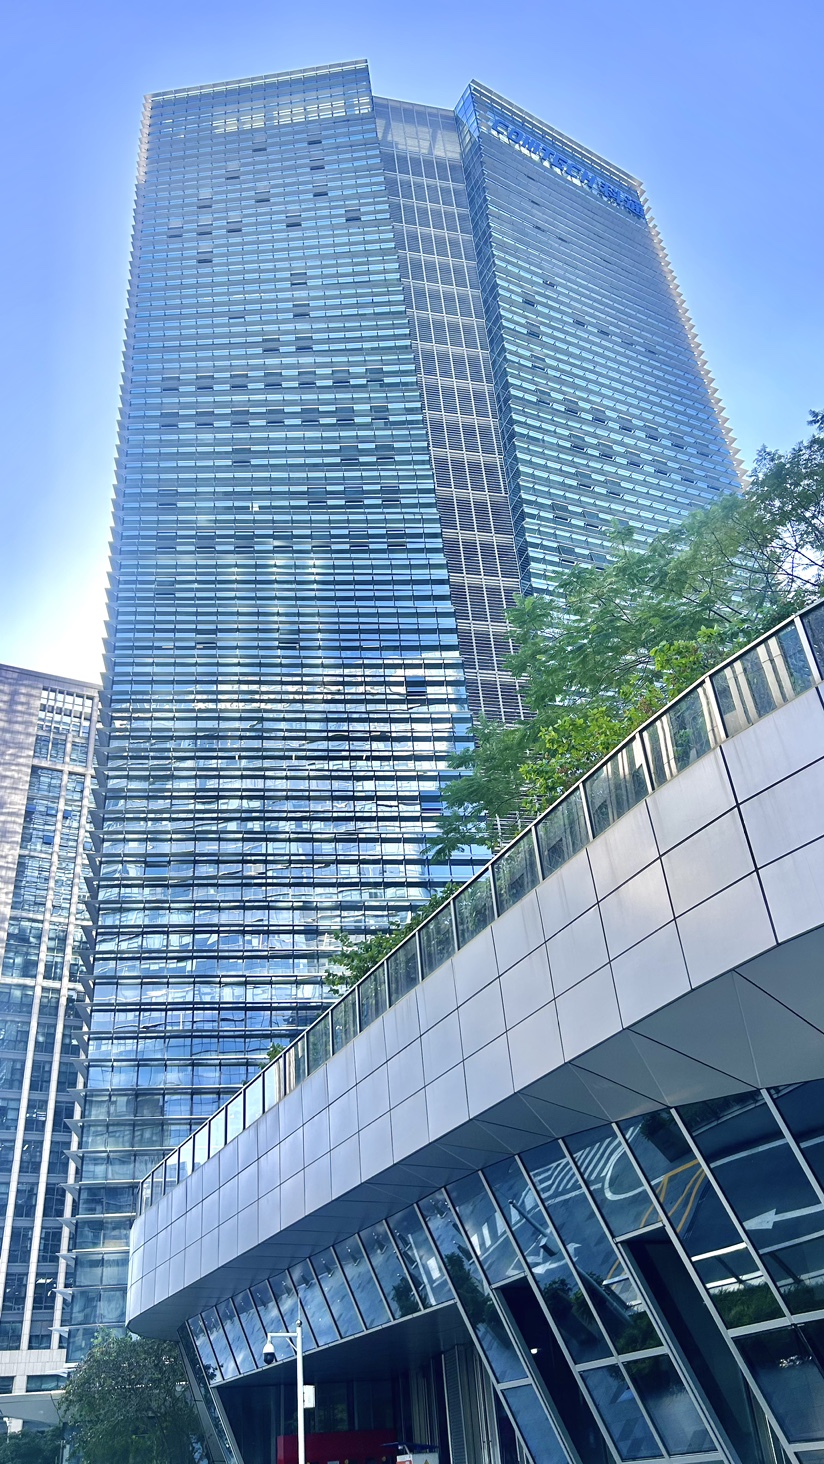 免租半年科技园甲级写字楼双地铁口世界500强企业总部大楼